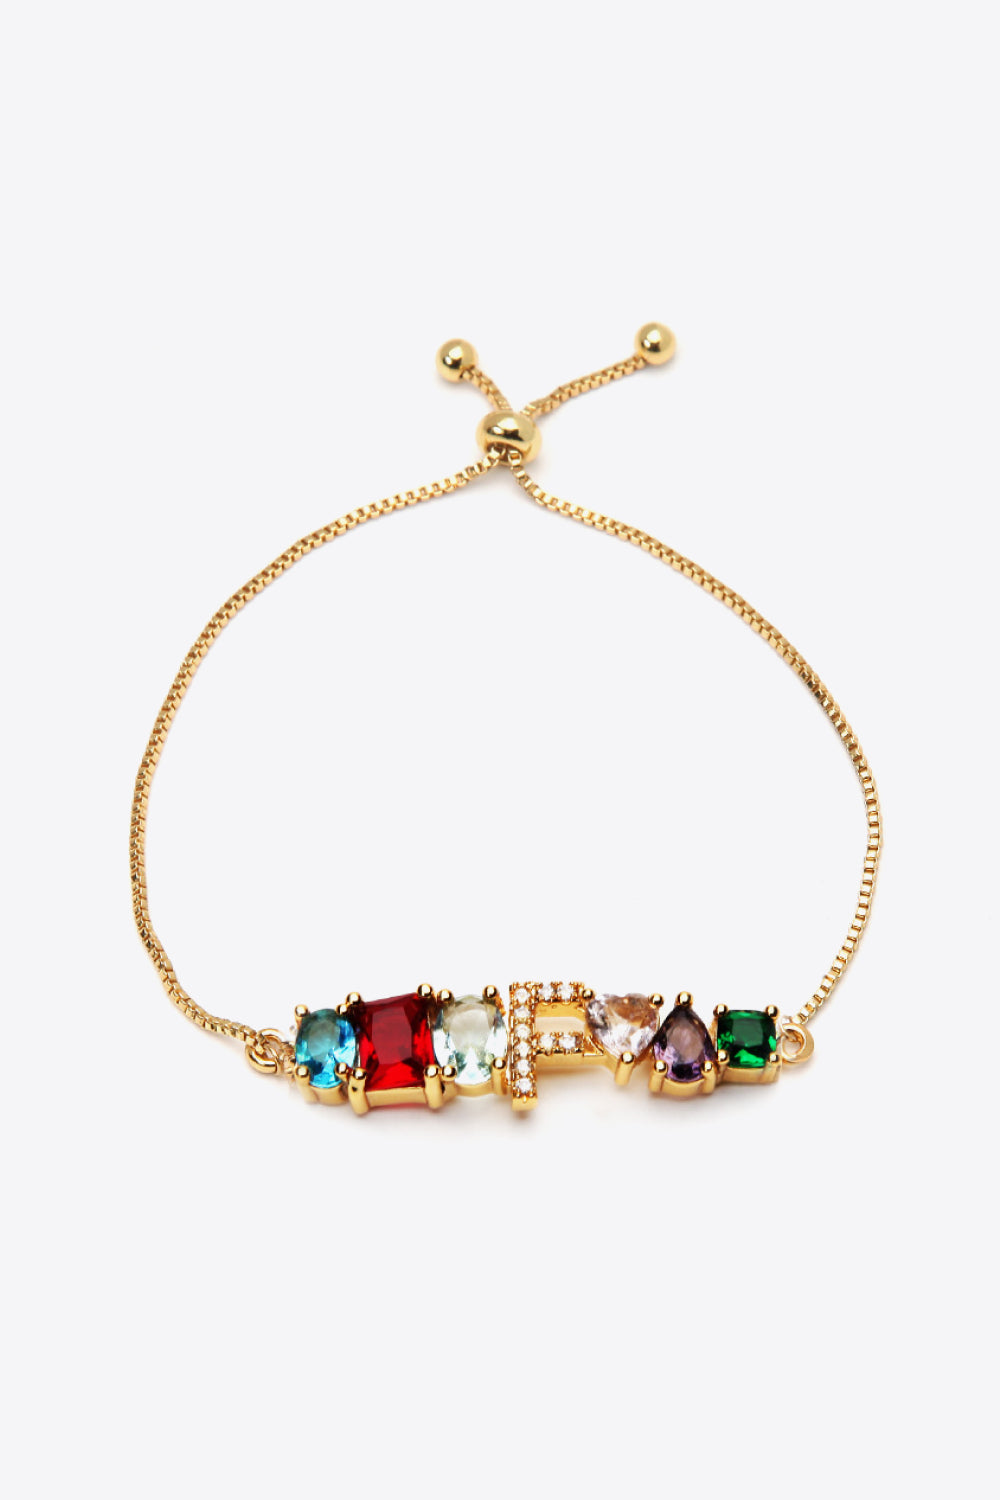 A to J Zircon Bracelet - F / One Size - Women’s Jewelry - Bracelets - 16 - 2024